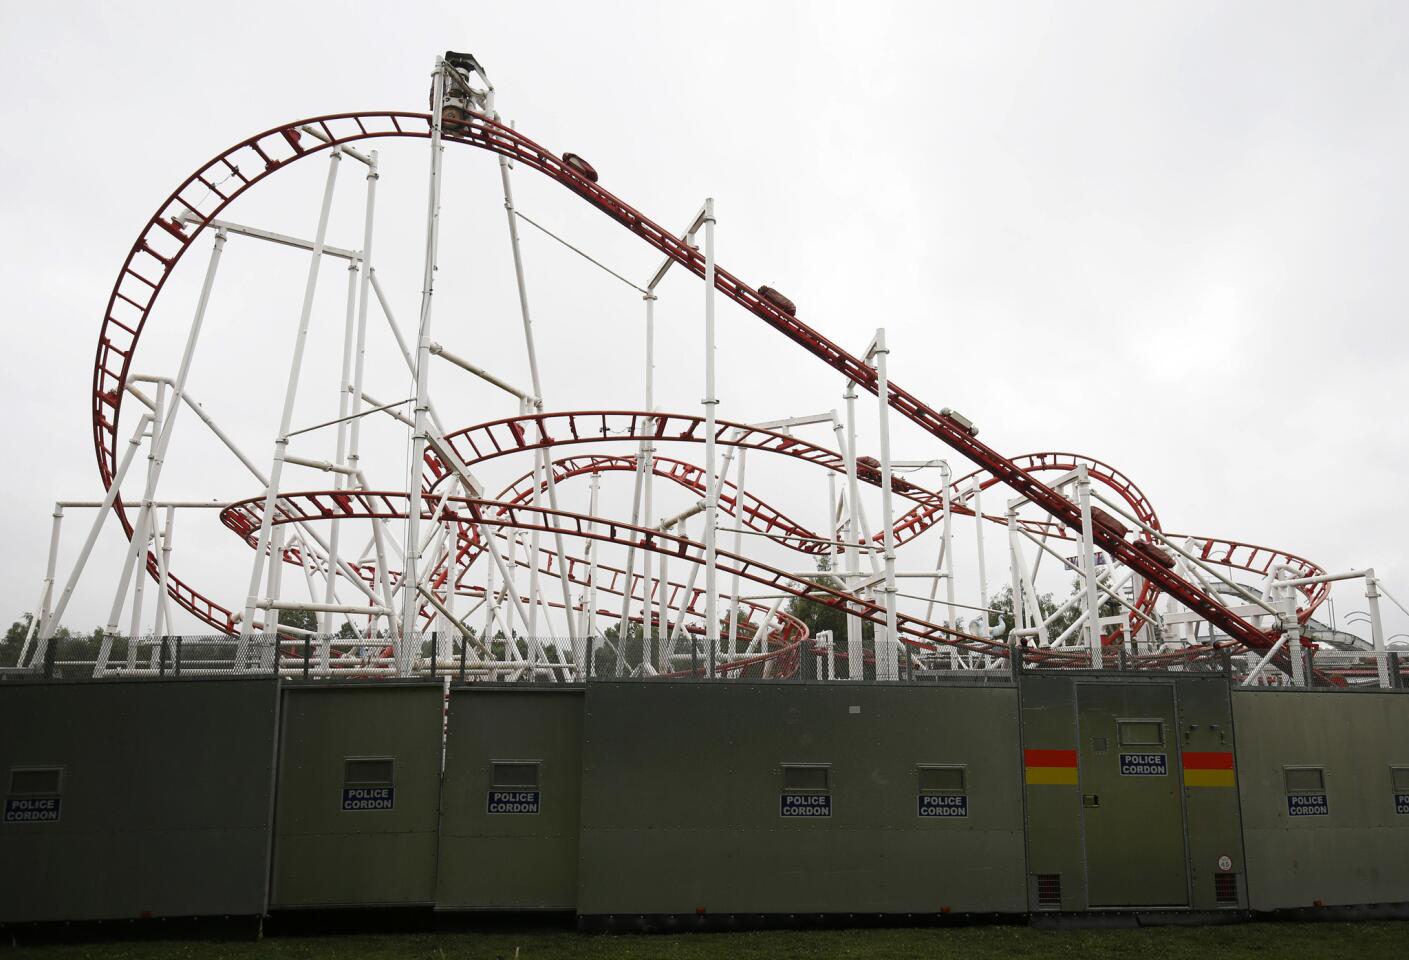 M&D's amusement park rollercoaster crash